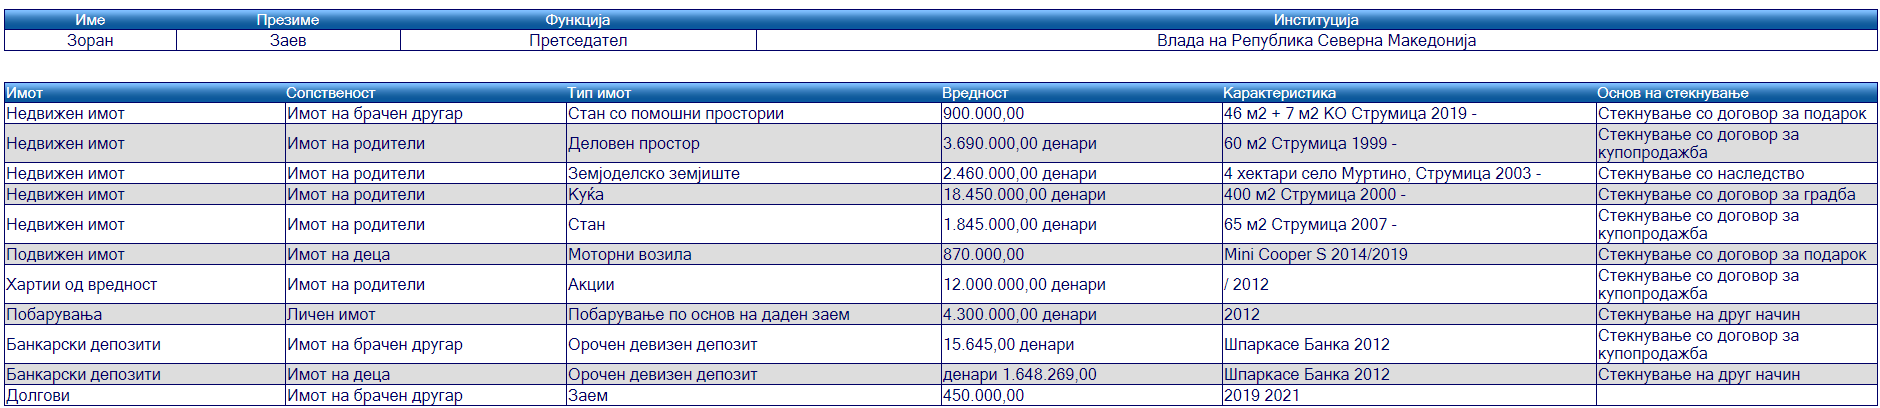 Анкетен лист на Зоран Заев